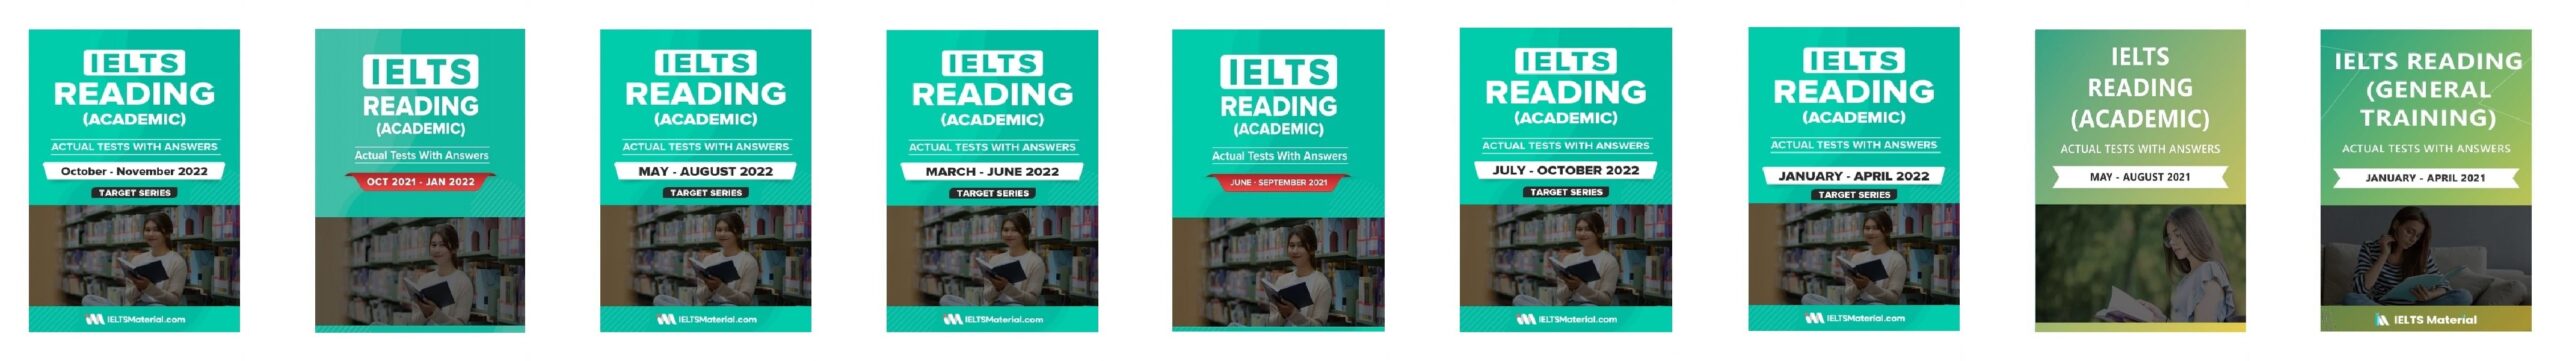 کتاب آزمون واقعی آیلتس | فروشگاه اینترنتی کتاب آیلتس | IELTS READING ACTUAL TESTS | مجموعه کتاب زبان های آیلتس ریدینگ اکچوال تست